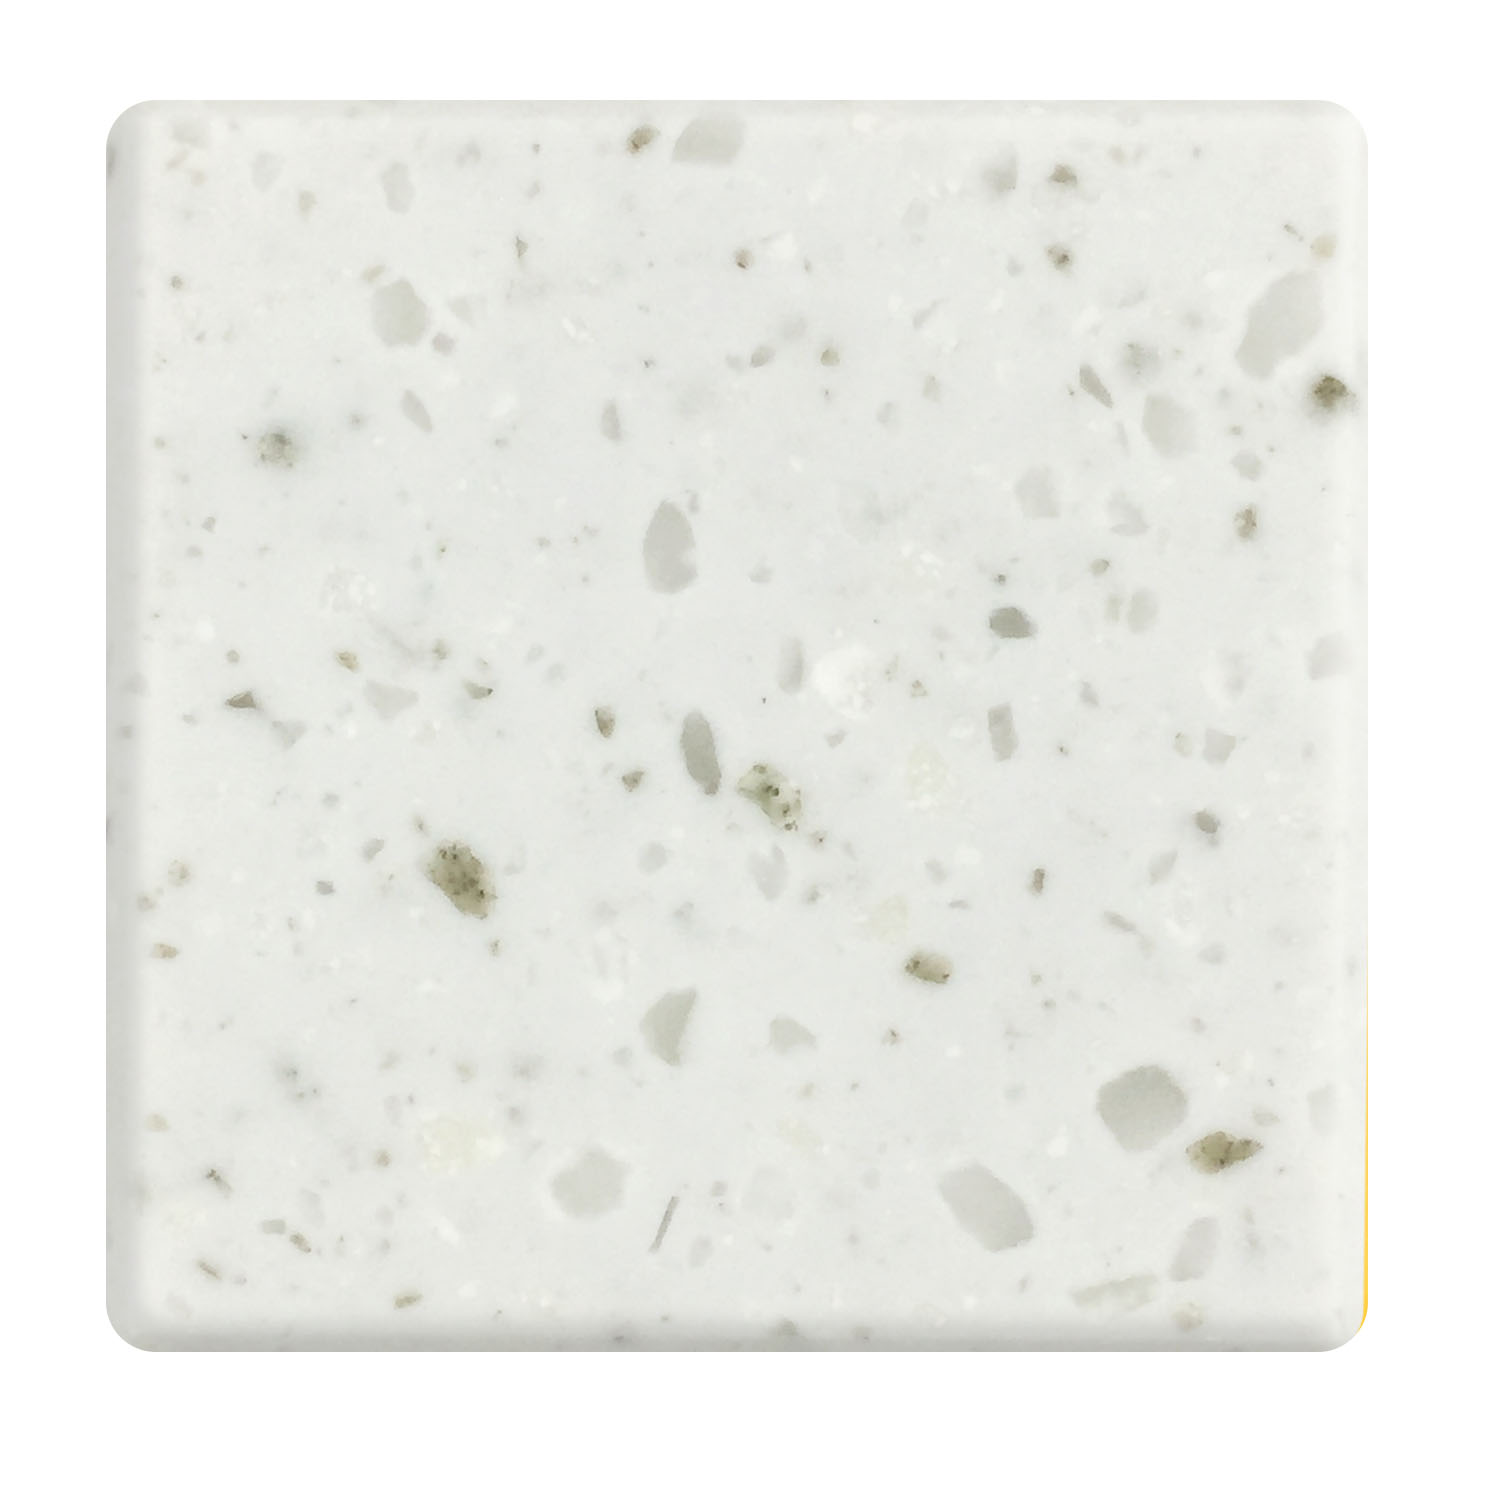 Superficie sólida de acrílico puro Superficie sólida de piedra de cuarzo artificial blanca cristalina